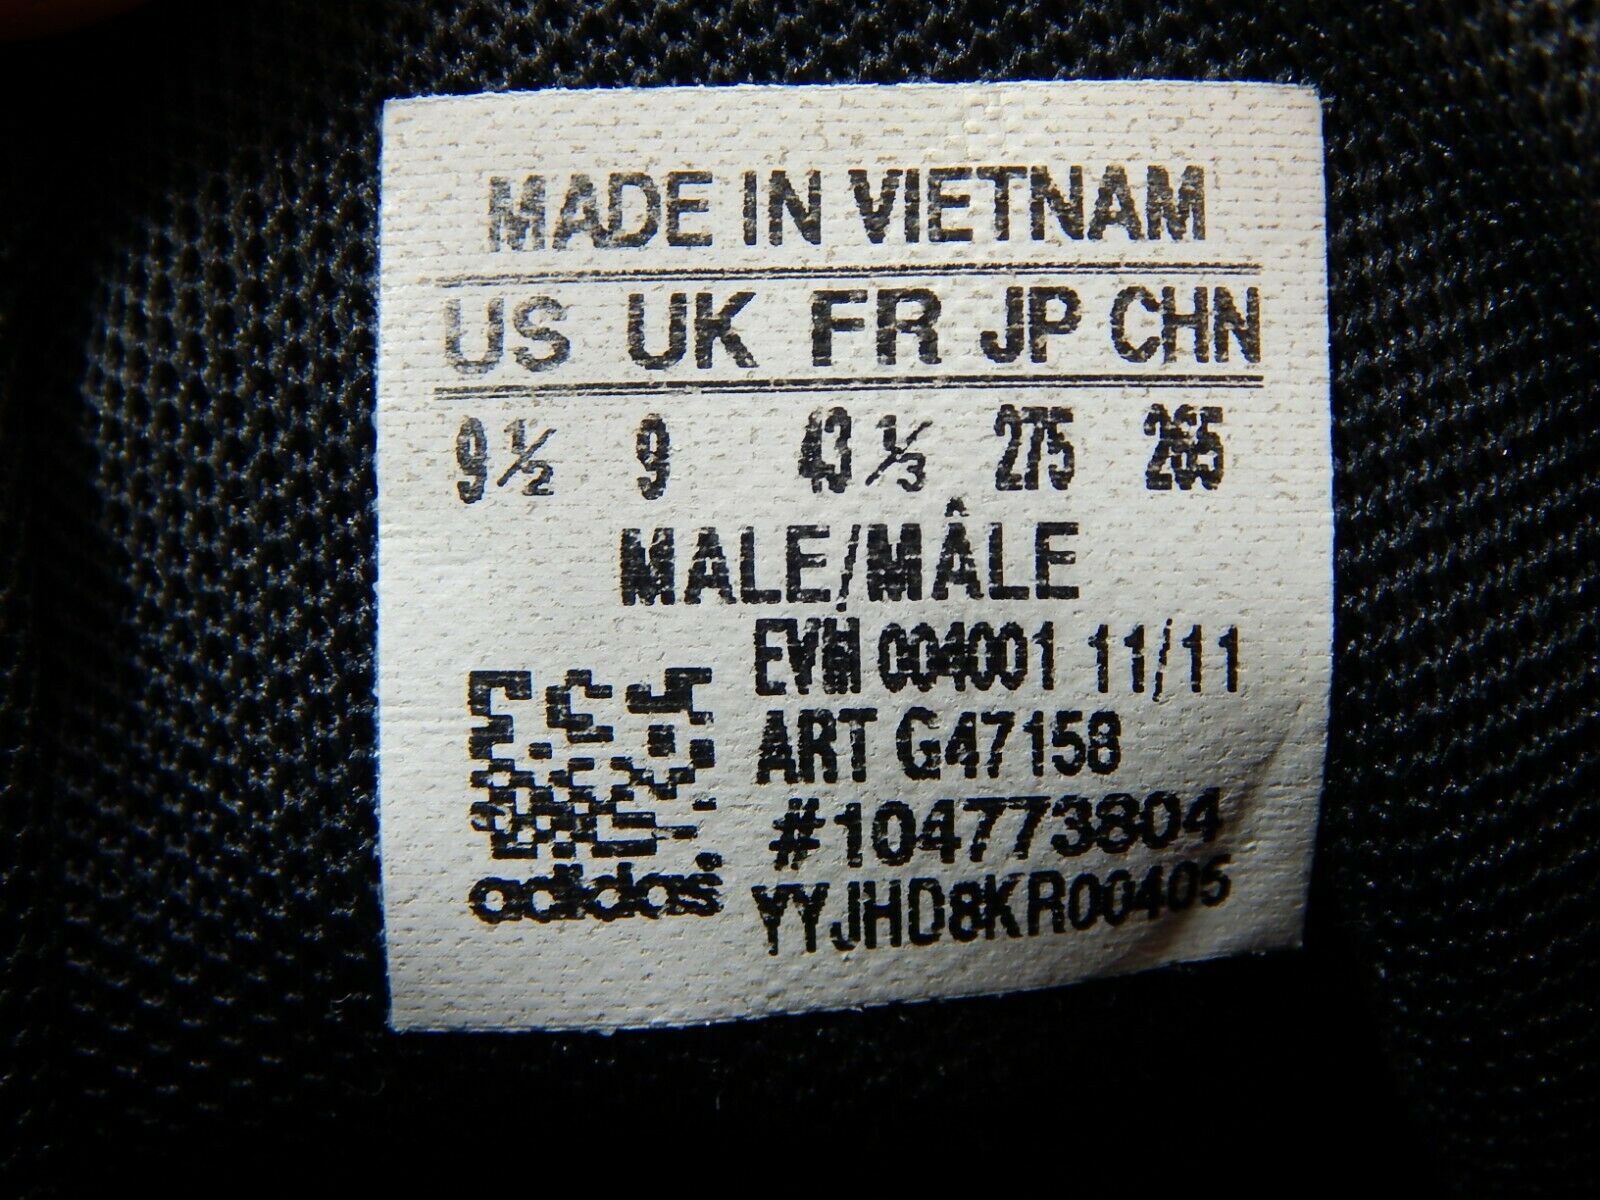 Adidas EVM 004001 Hi-Top Size 9.5 M (D) EU 43 1/3 Men's Sneakers Shoes ...